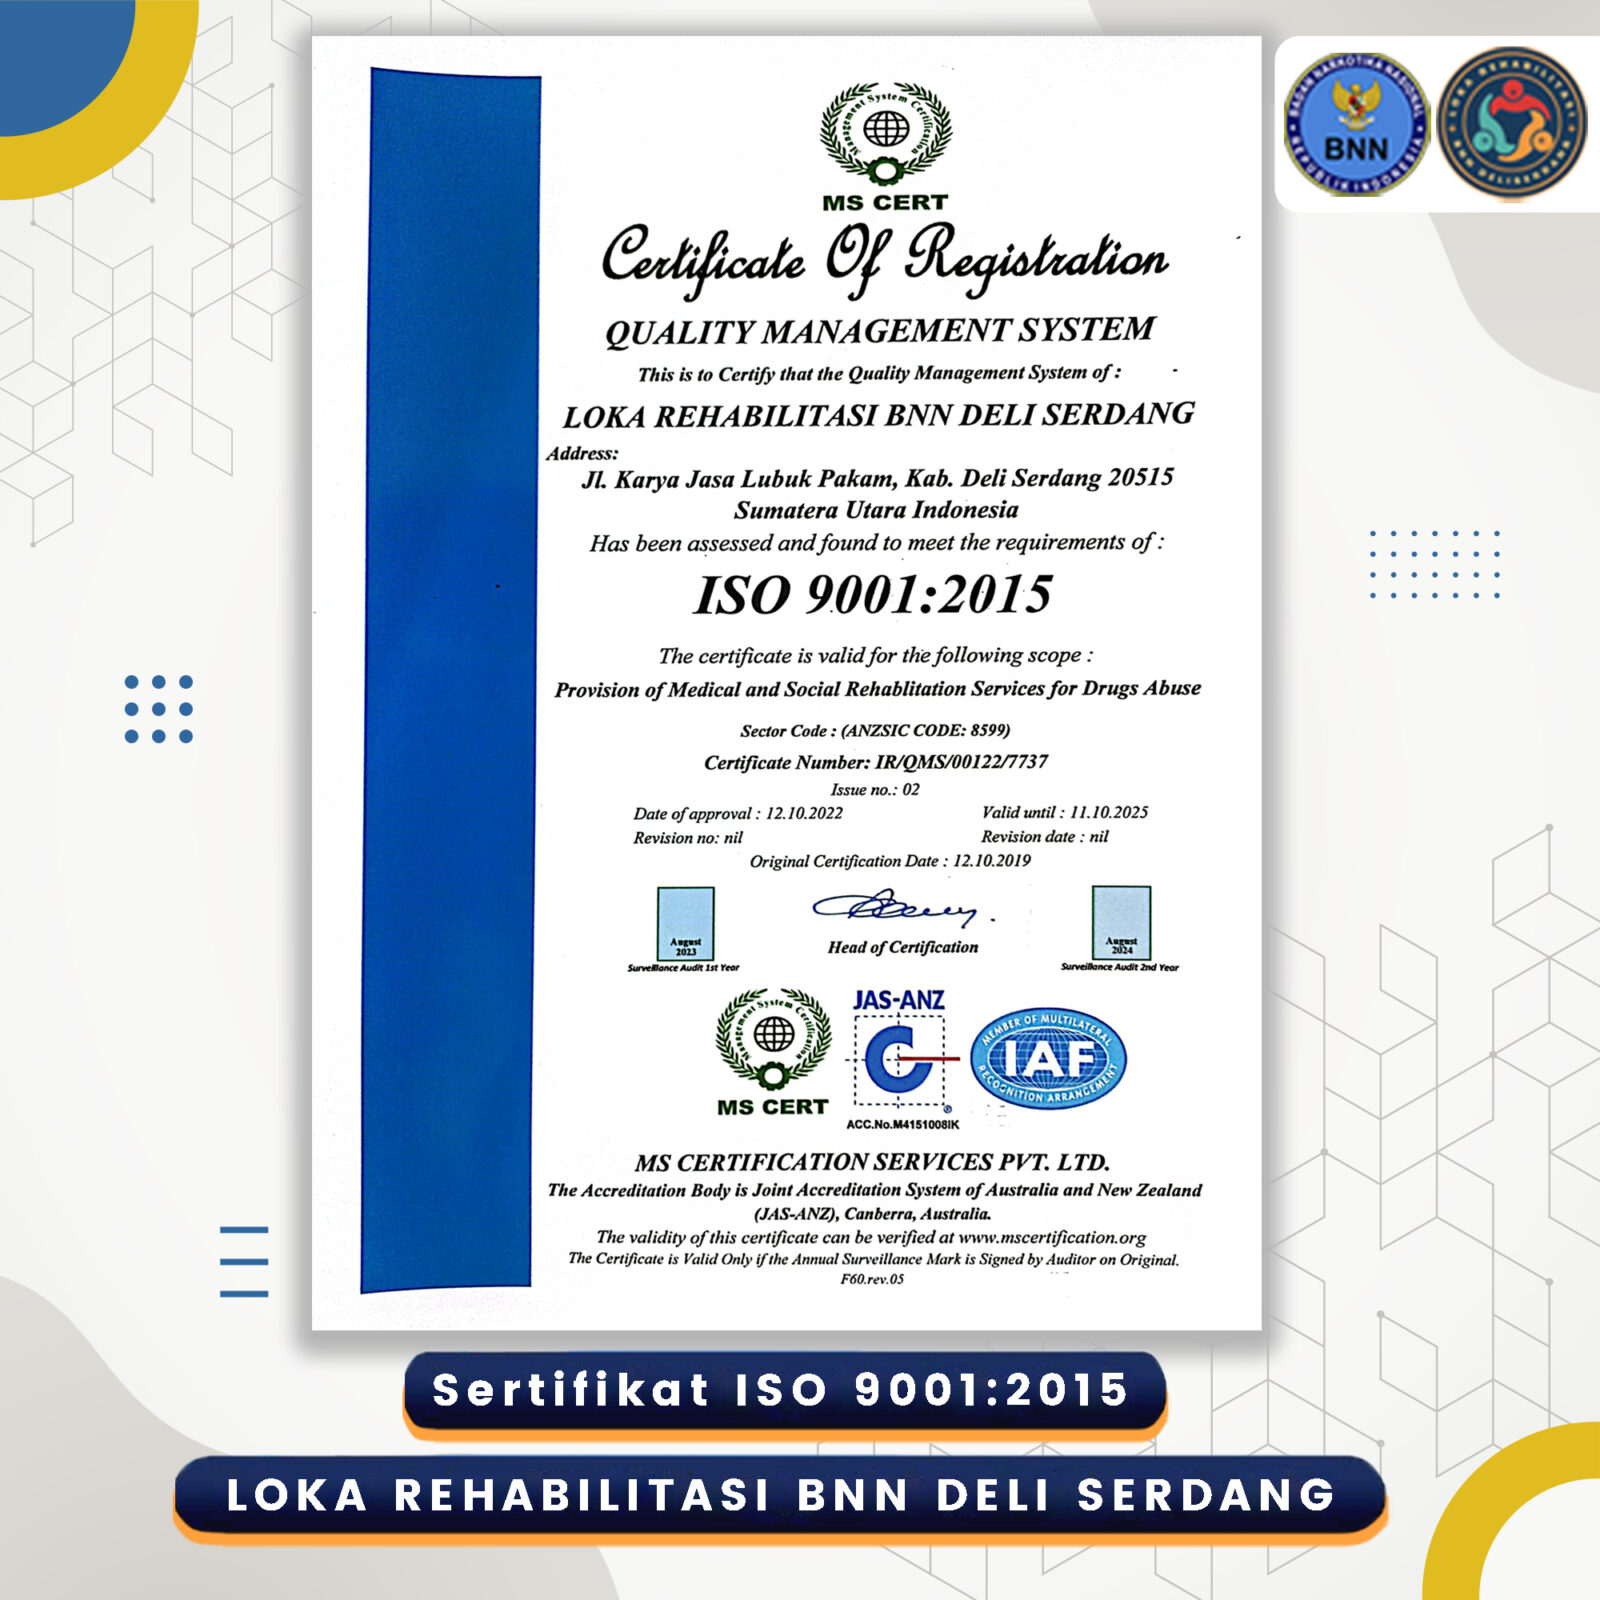 LOKA REHABILITASI BNN DELI SERDANG KEMBALI BERHASIL MERAIH SERTIFIKAT ISO 9001:2015